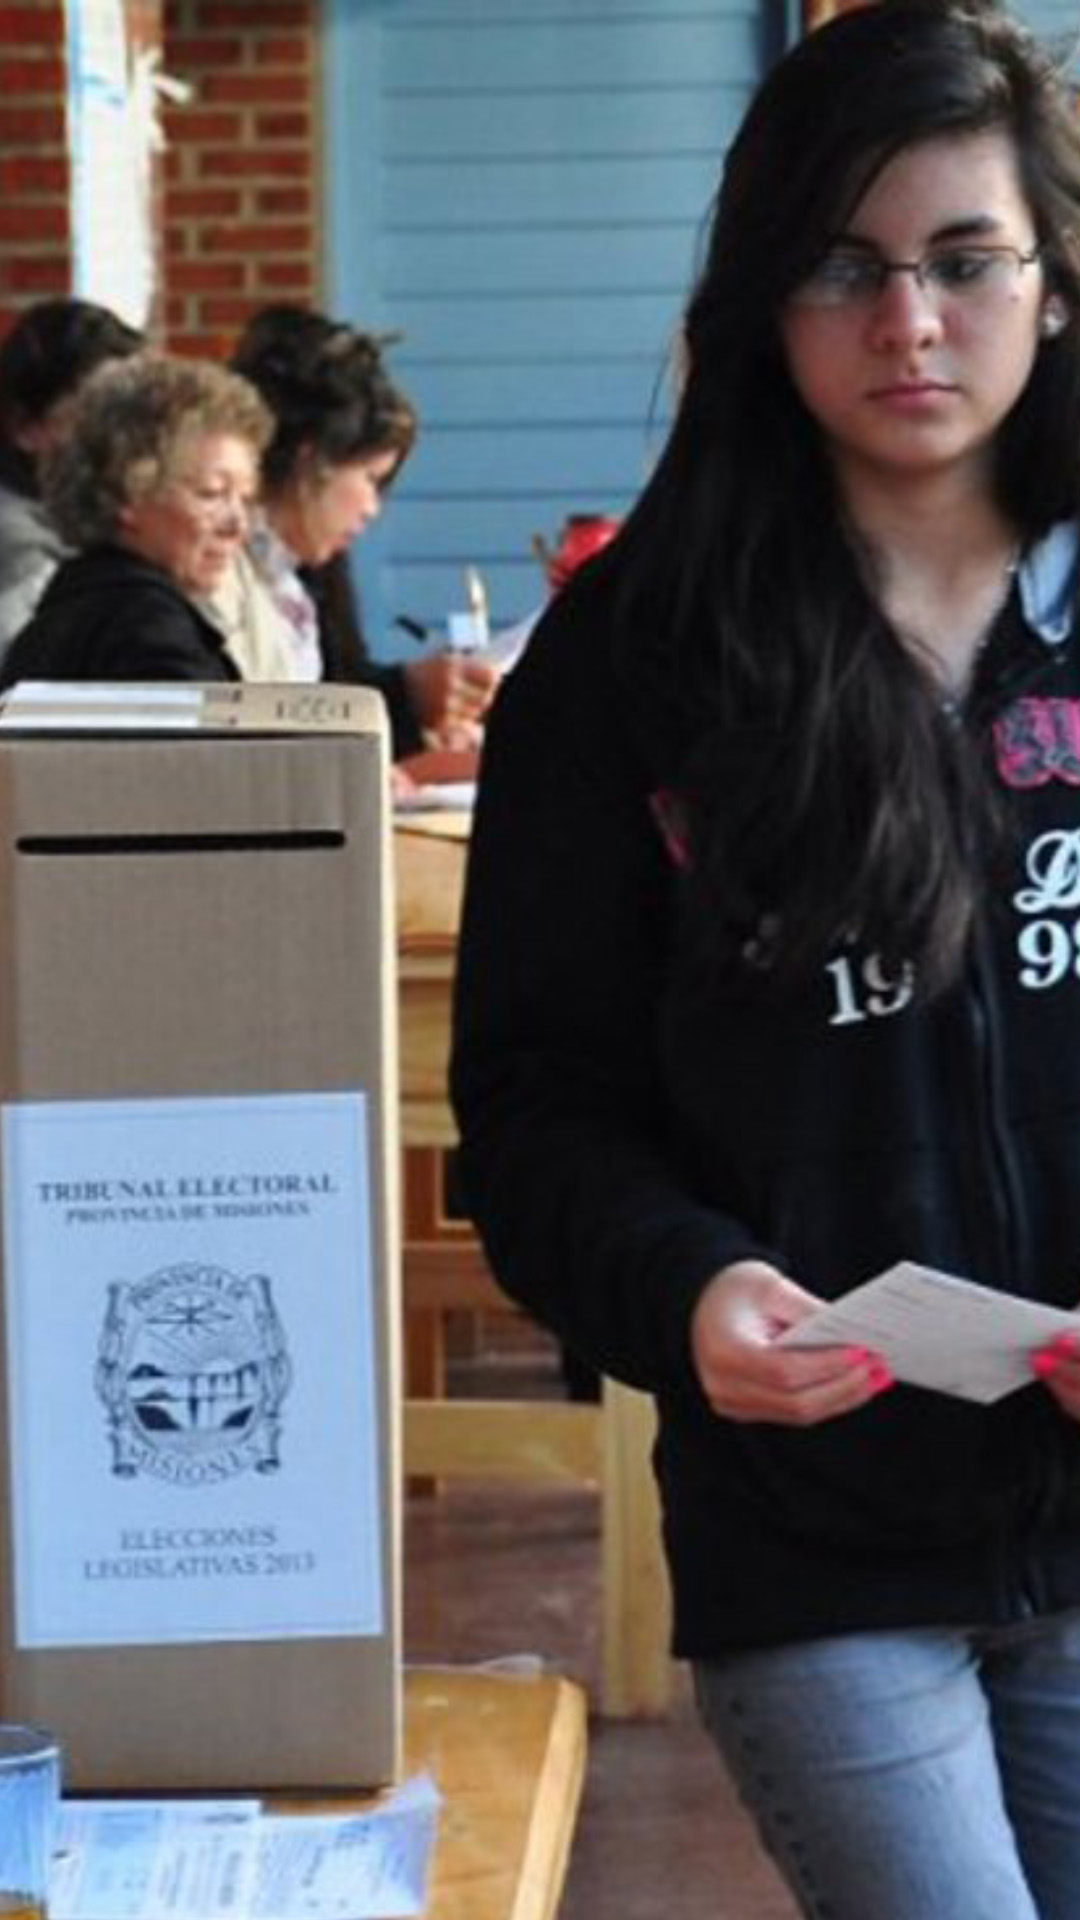 Elecciones de 2015. Una jóven se dirige a introducir su voto en la urna, en la mesa la presidenta de mesa charla con otra autoridad.